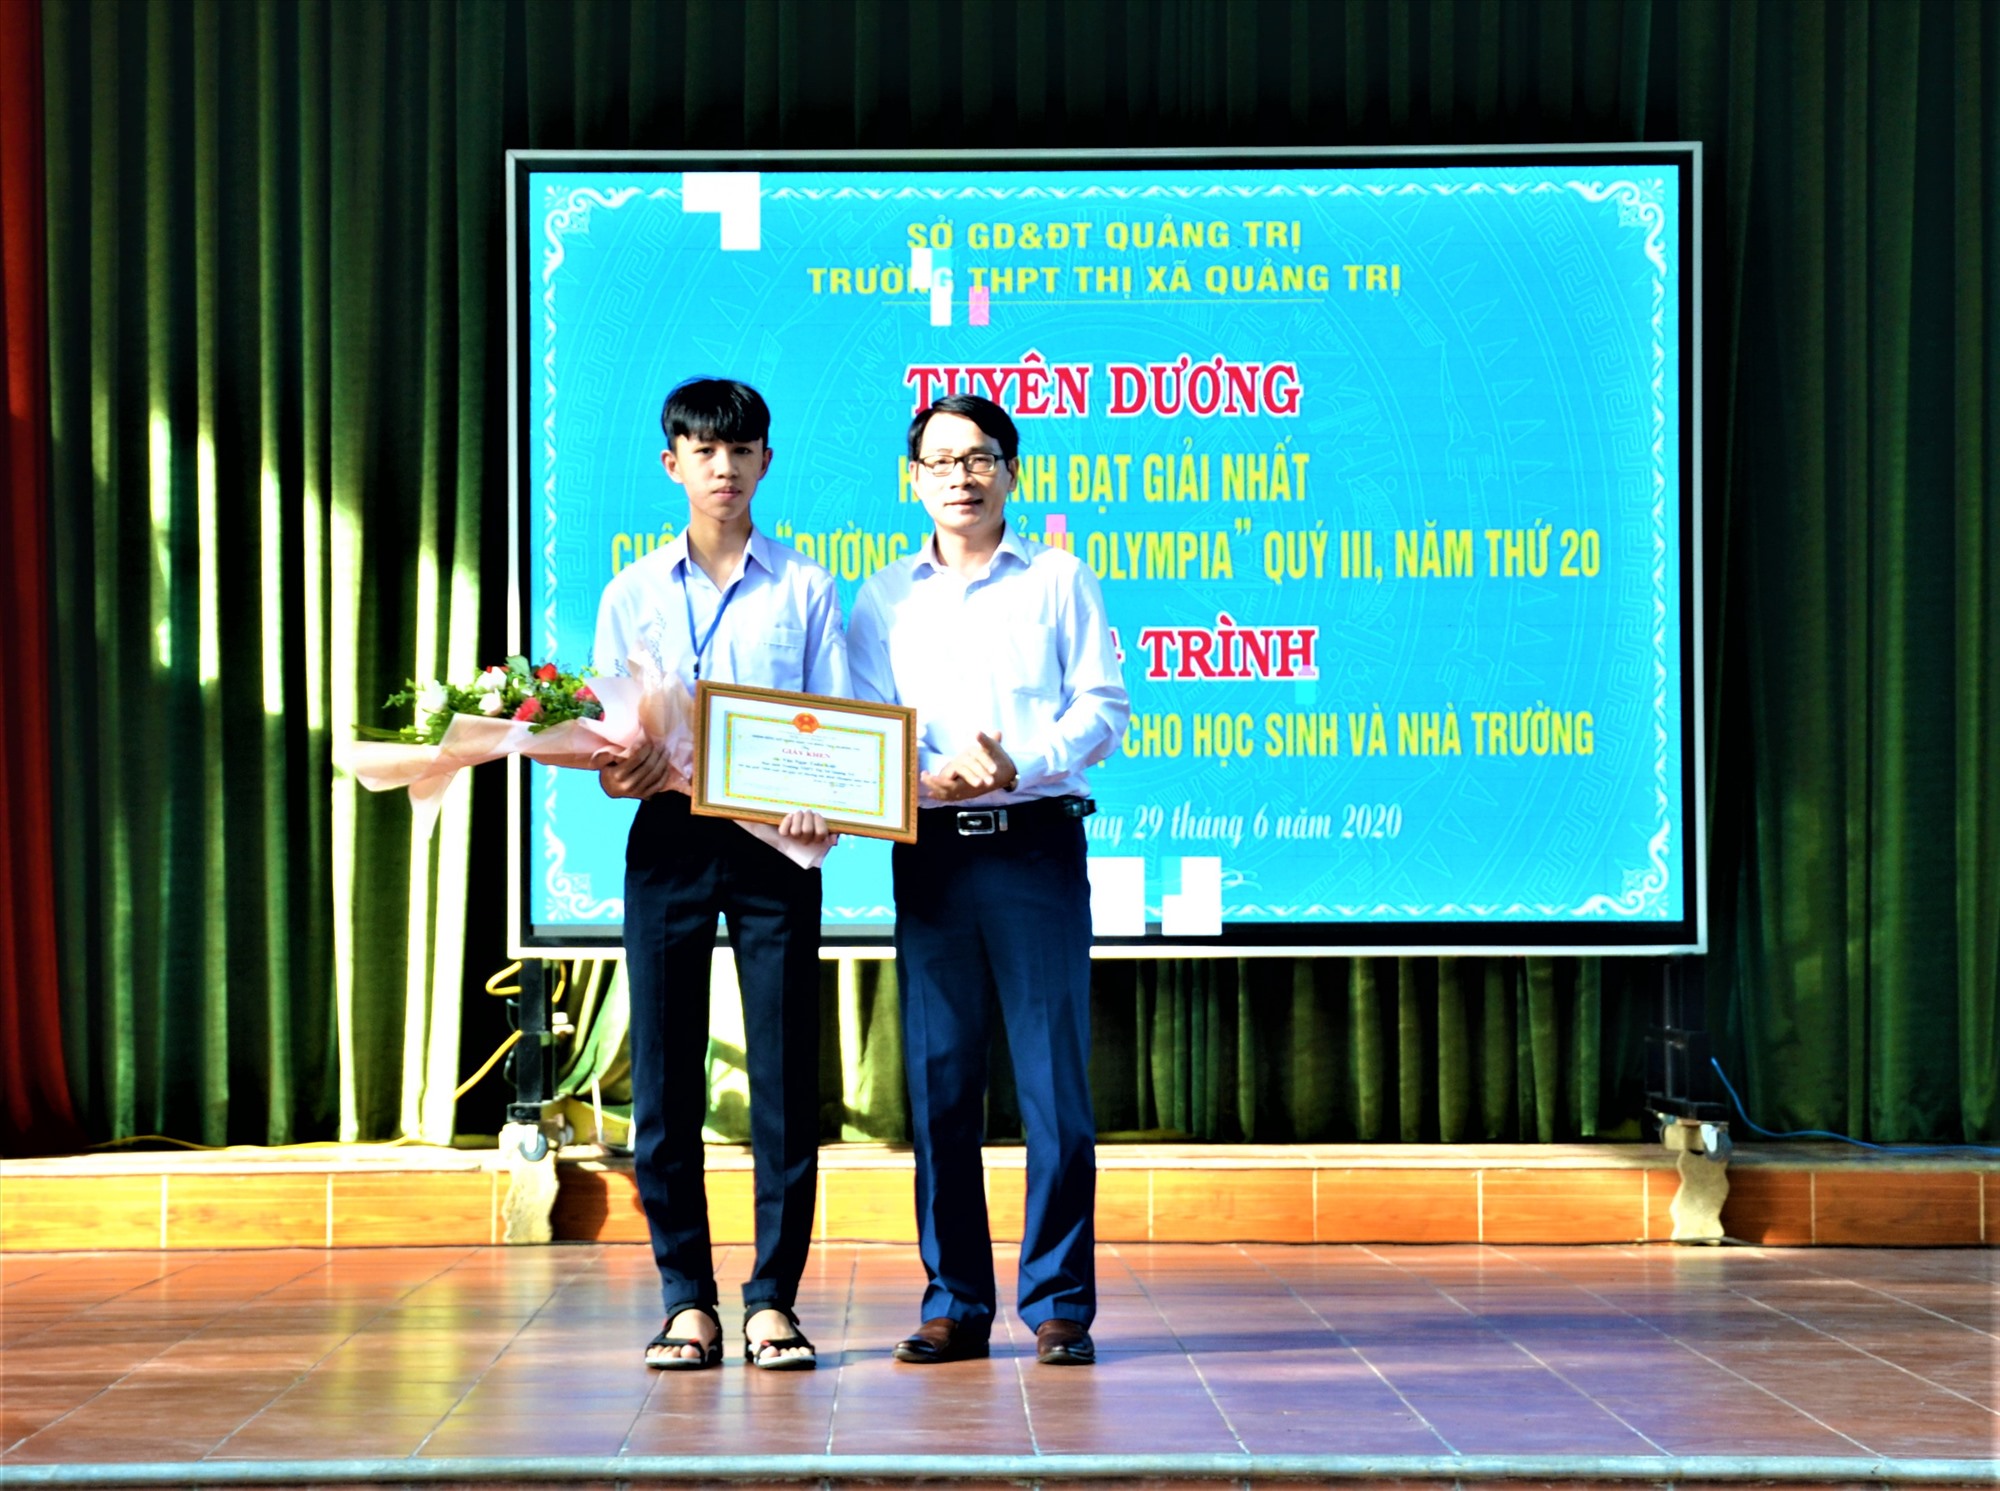 Lãnh đạo Sở Giáo dục - Đào tạo tỉnh trao giấy khen cho em Văn Ngọc Tuấn Kiệt vì đã xuất sắc giành giải Nhất cuộc thi Quý chương trình Đường lên đỉnh Olympia năm thứ 20